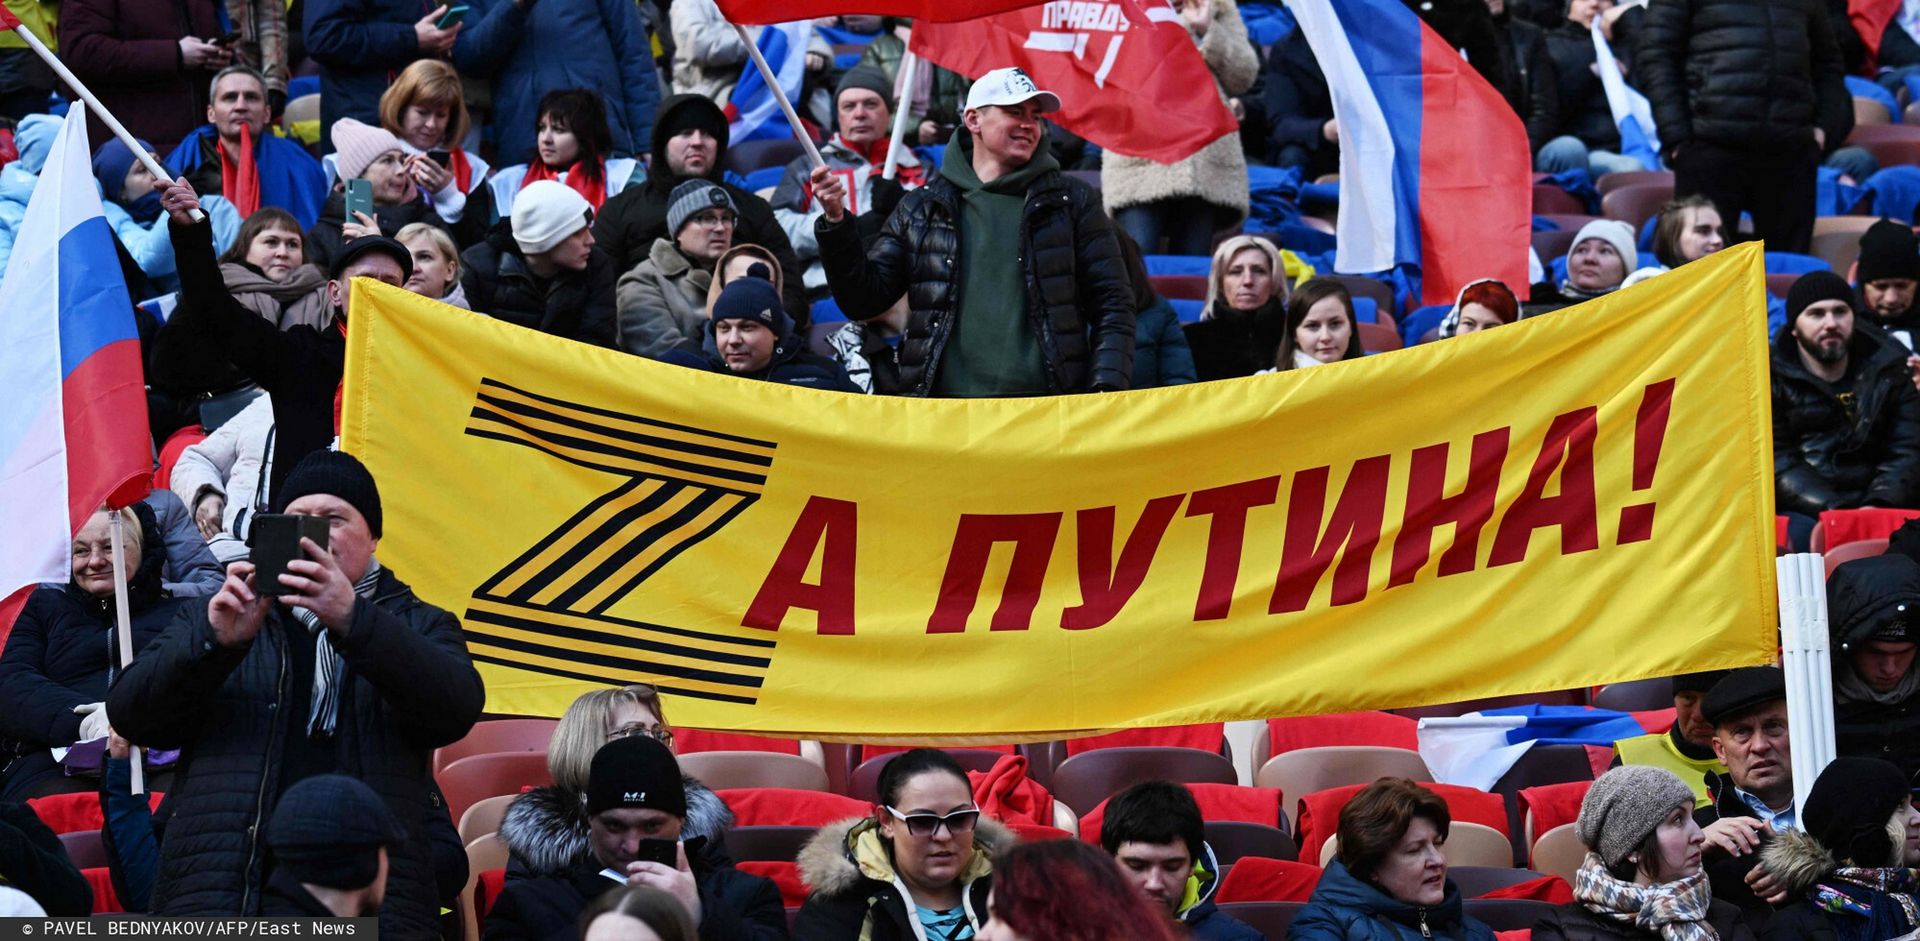 Wiec proputinowski na moskiewskim stadionie Łużniki w 8 rocznicę bezprawnej aneksji Krymu przez Rosję. Napis głosi: "Za Putina!"